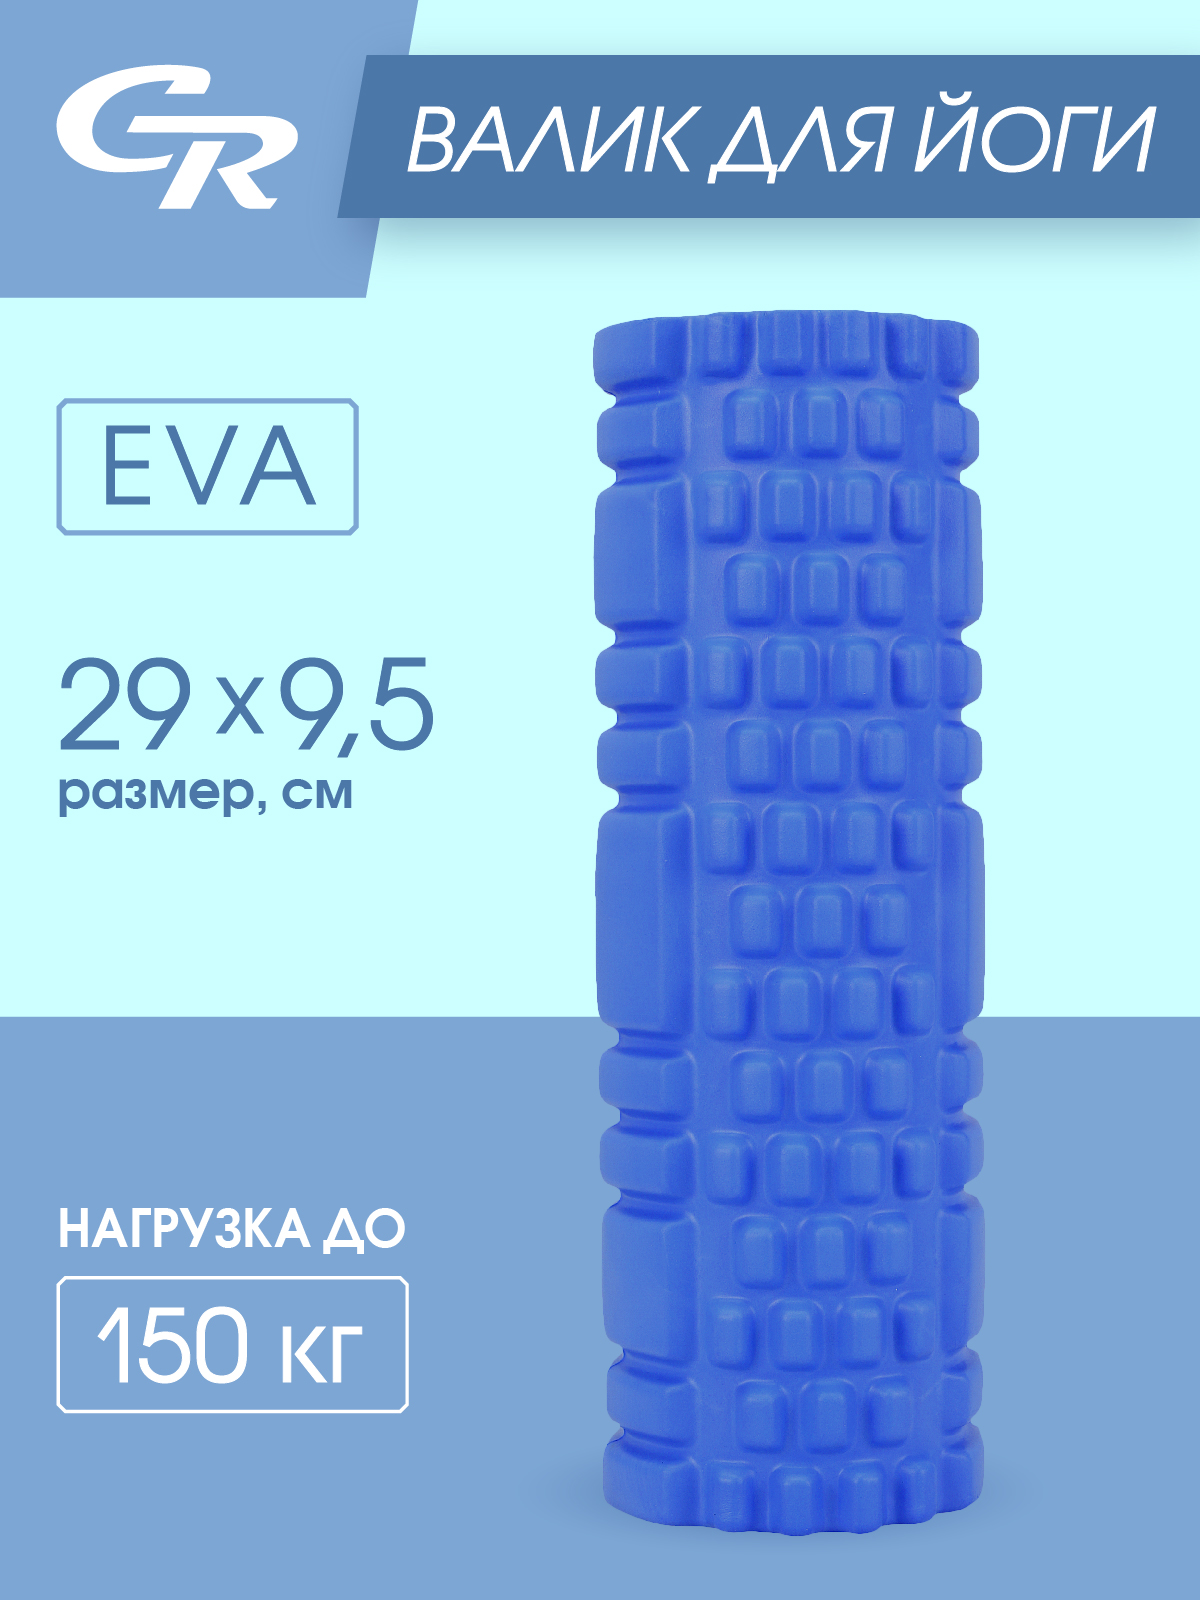 Валик для йоги, массажный, для растяжки, для расслабления мышц, ЭВА, синий, JB4300079